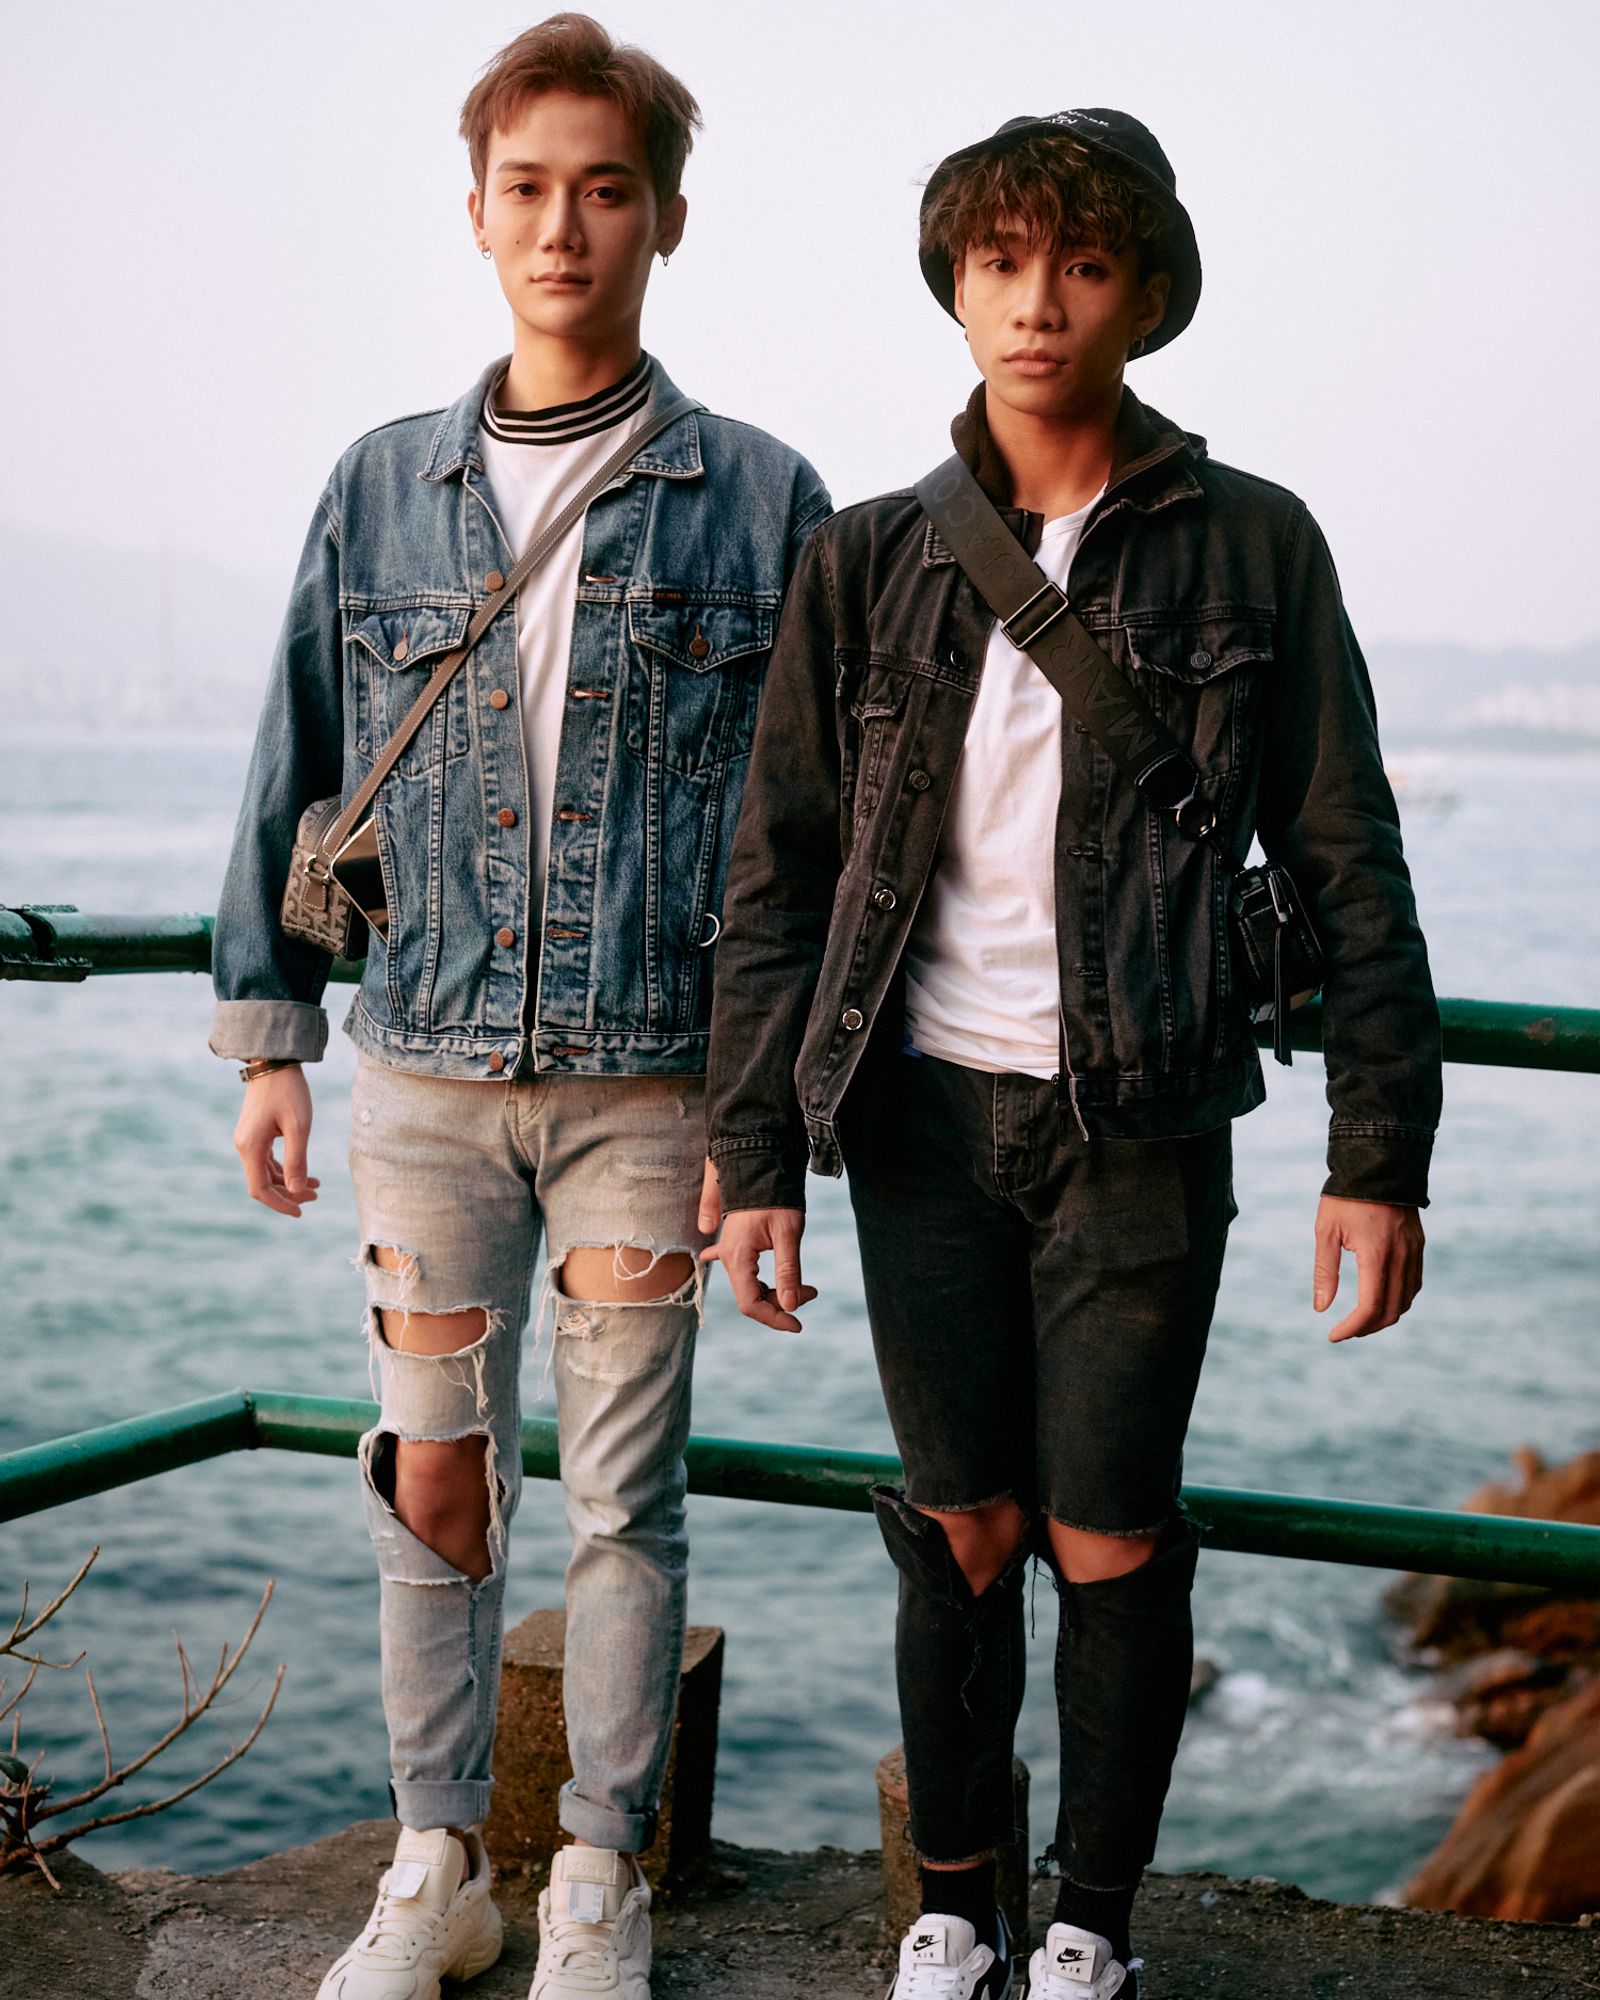 © Chung-wai Wong - Oscar and Kenny, waterfront at the western end of Hong Kong Island.